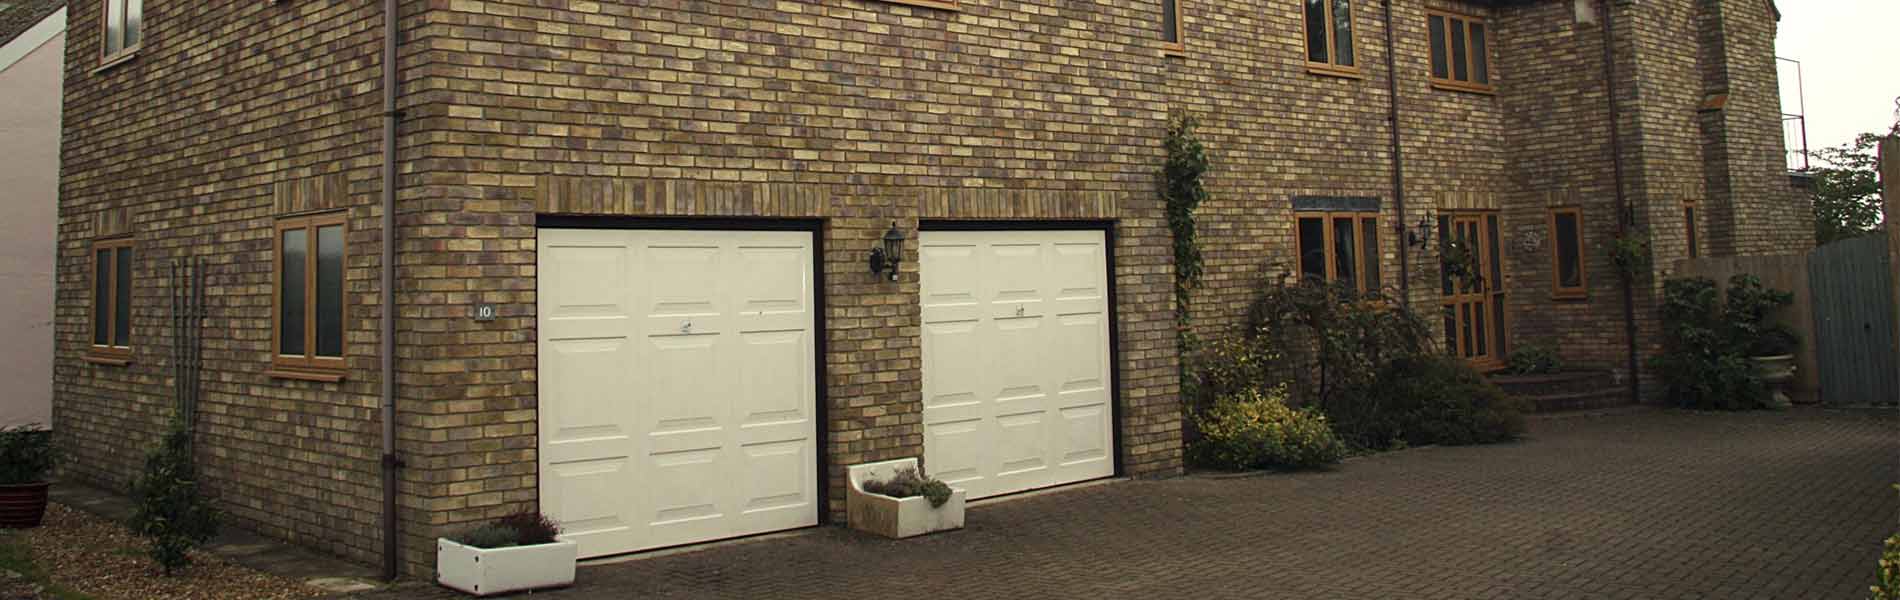 Olivair Home Improvements | Doors